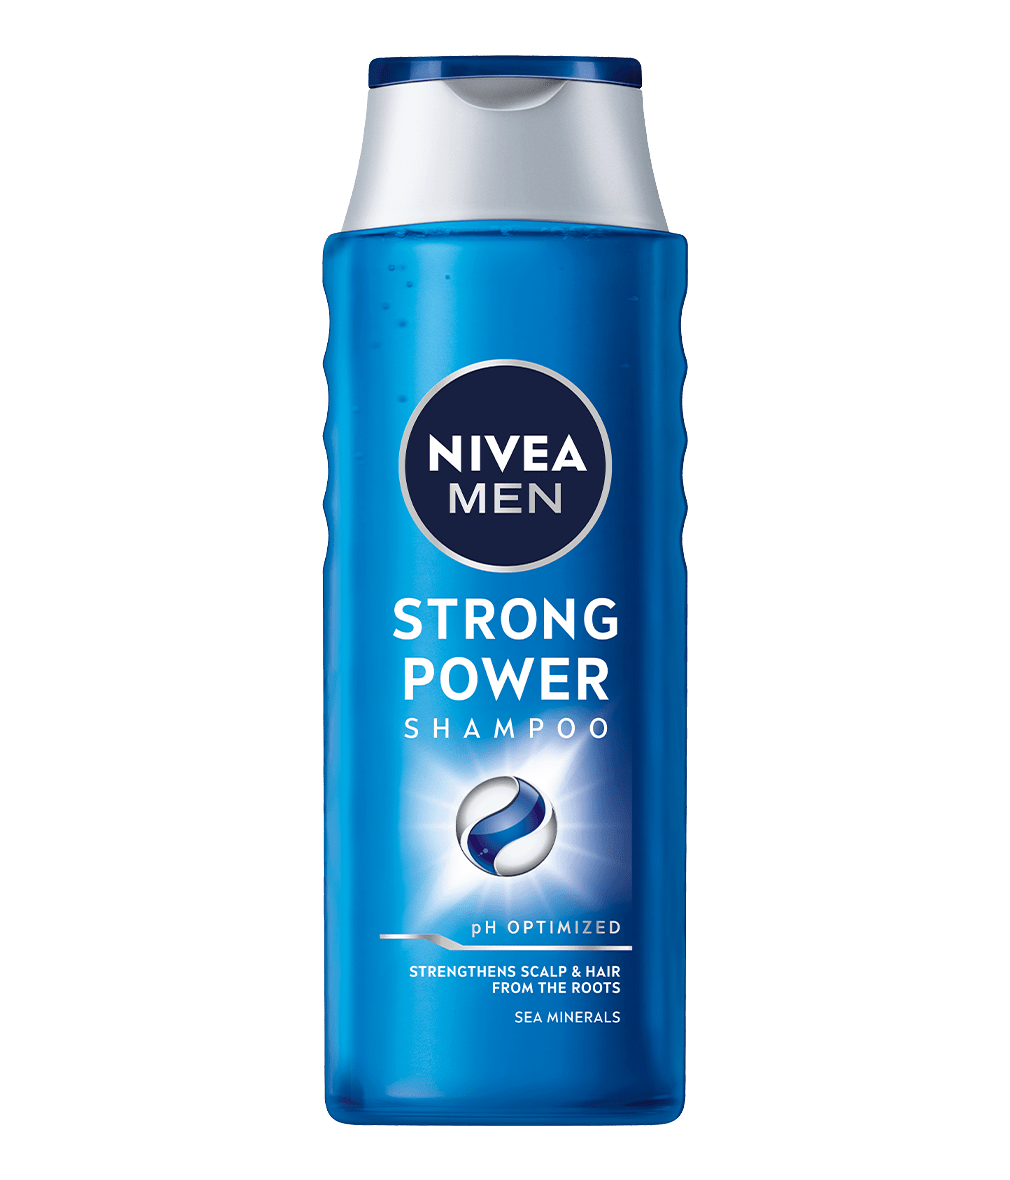 nivea men strong power szampon 400 ml